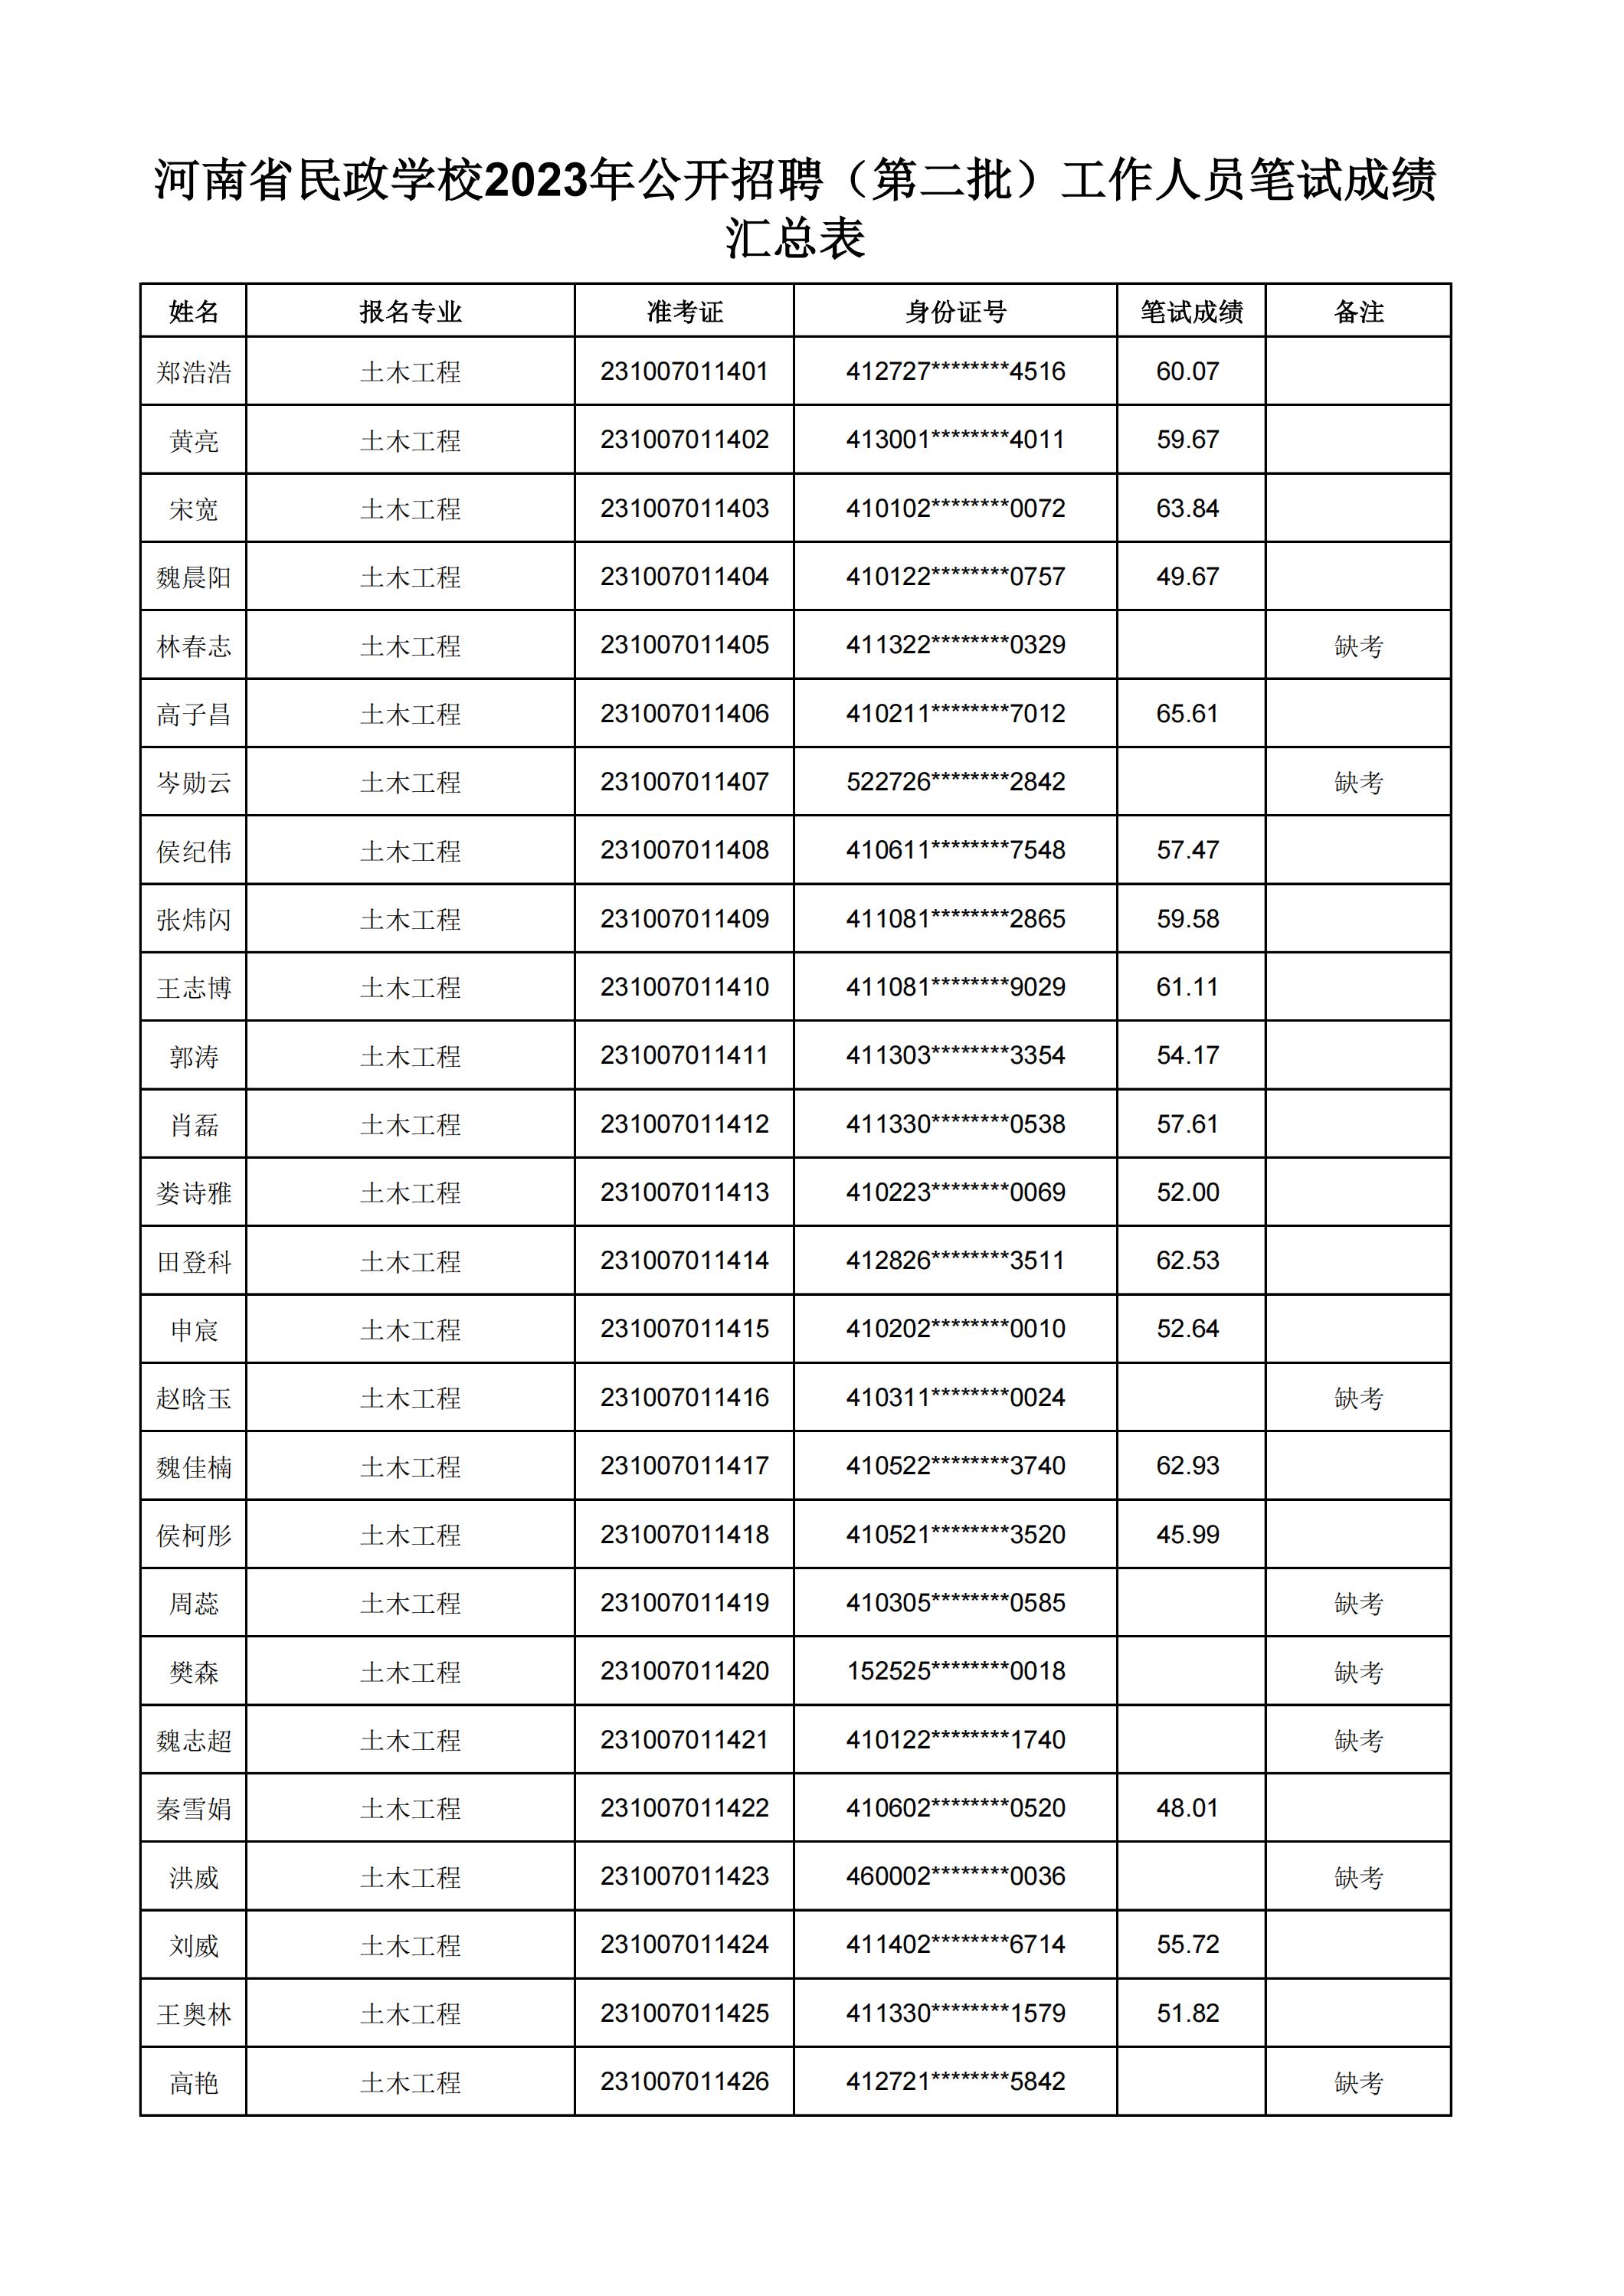 河南省民政学校2023年公开招聘（第二批）工作人员笔试成绩汇总表(2)_15.jpg